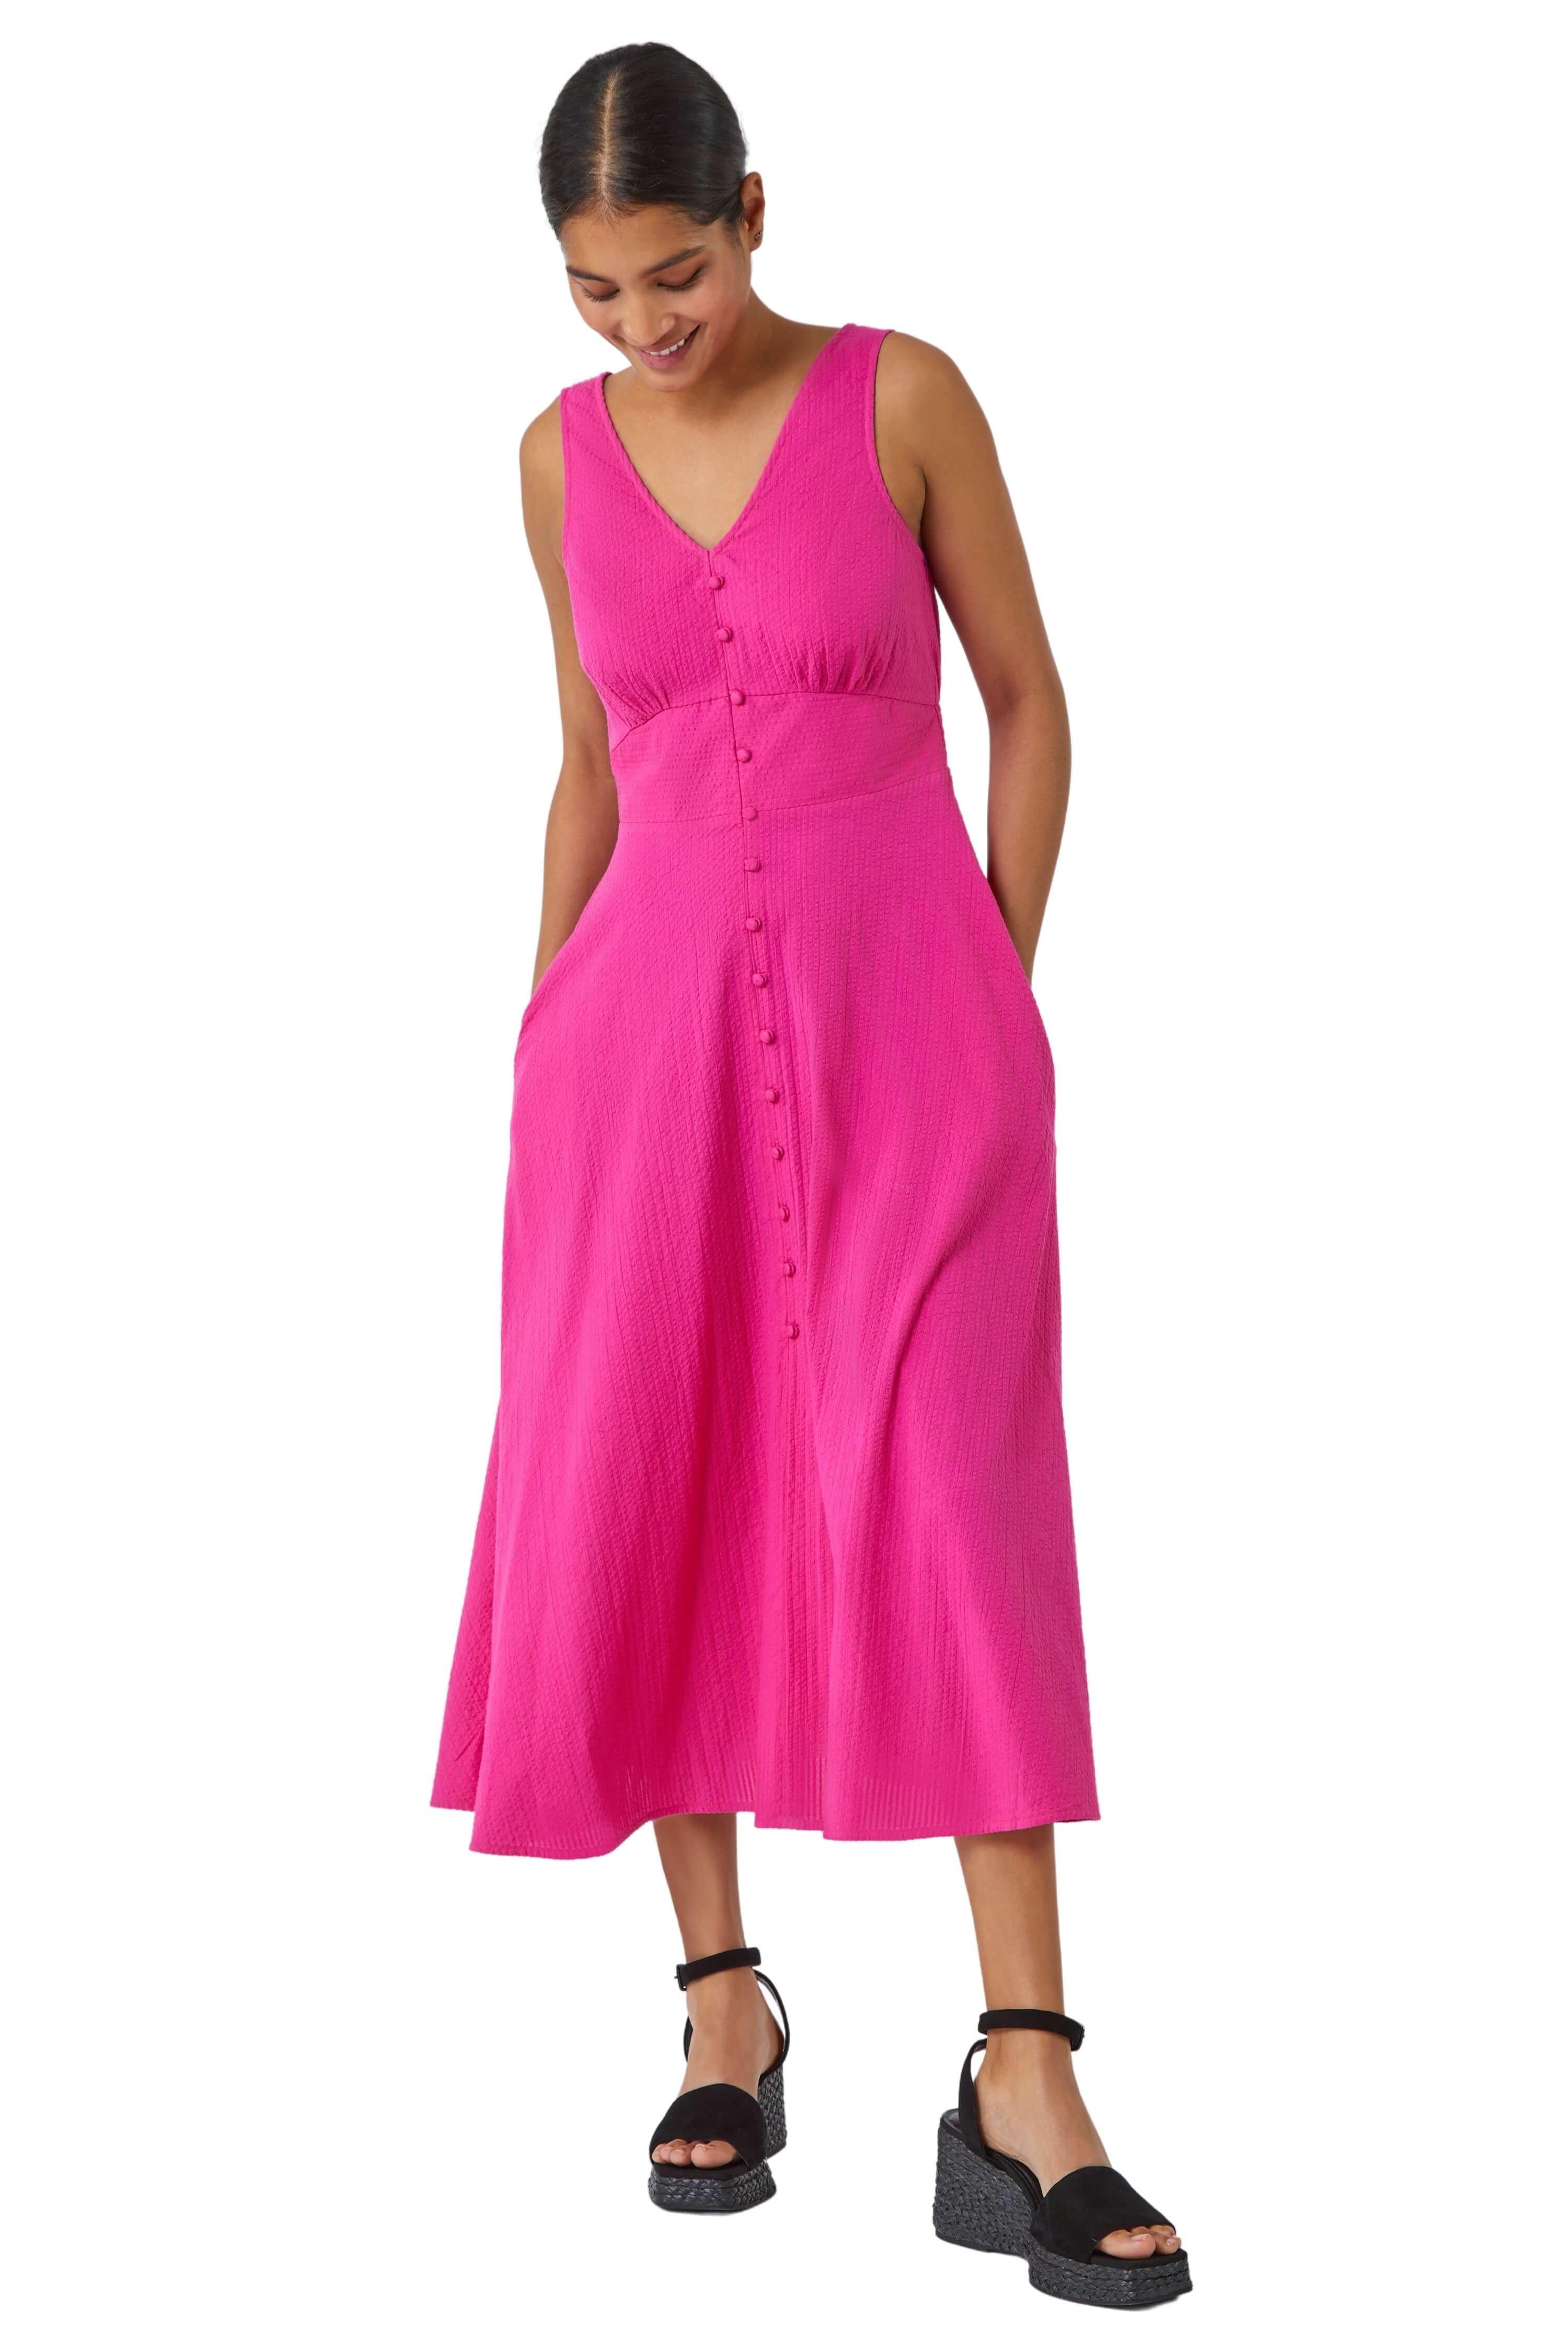 Хлопковое платье миди без рукавов с пуговицами Roman, розовый платье без рукавов на пуговицах из газовой хлопчатобумажной ткани 8 лет 126 см розовый